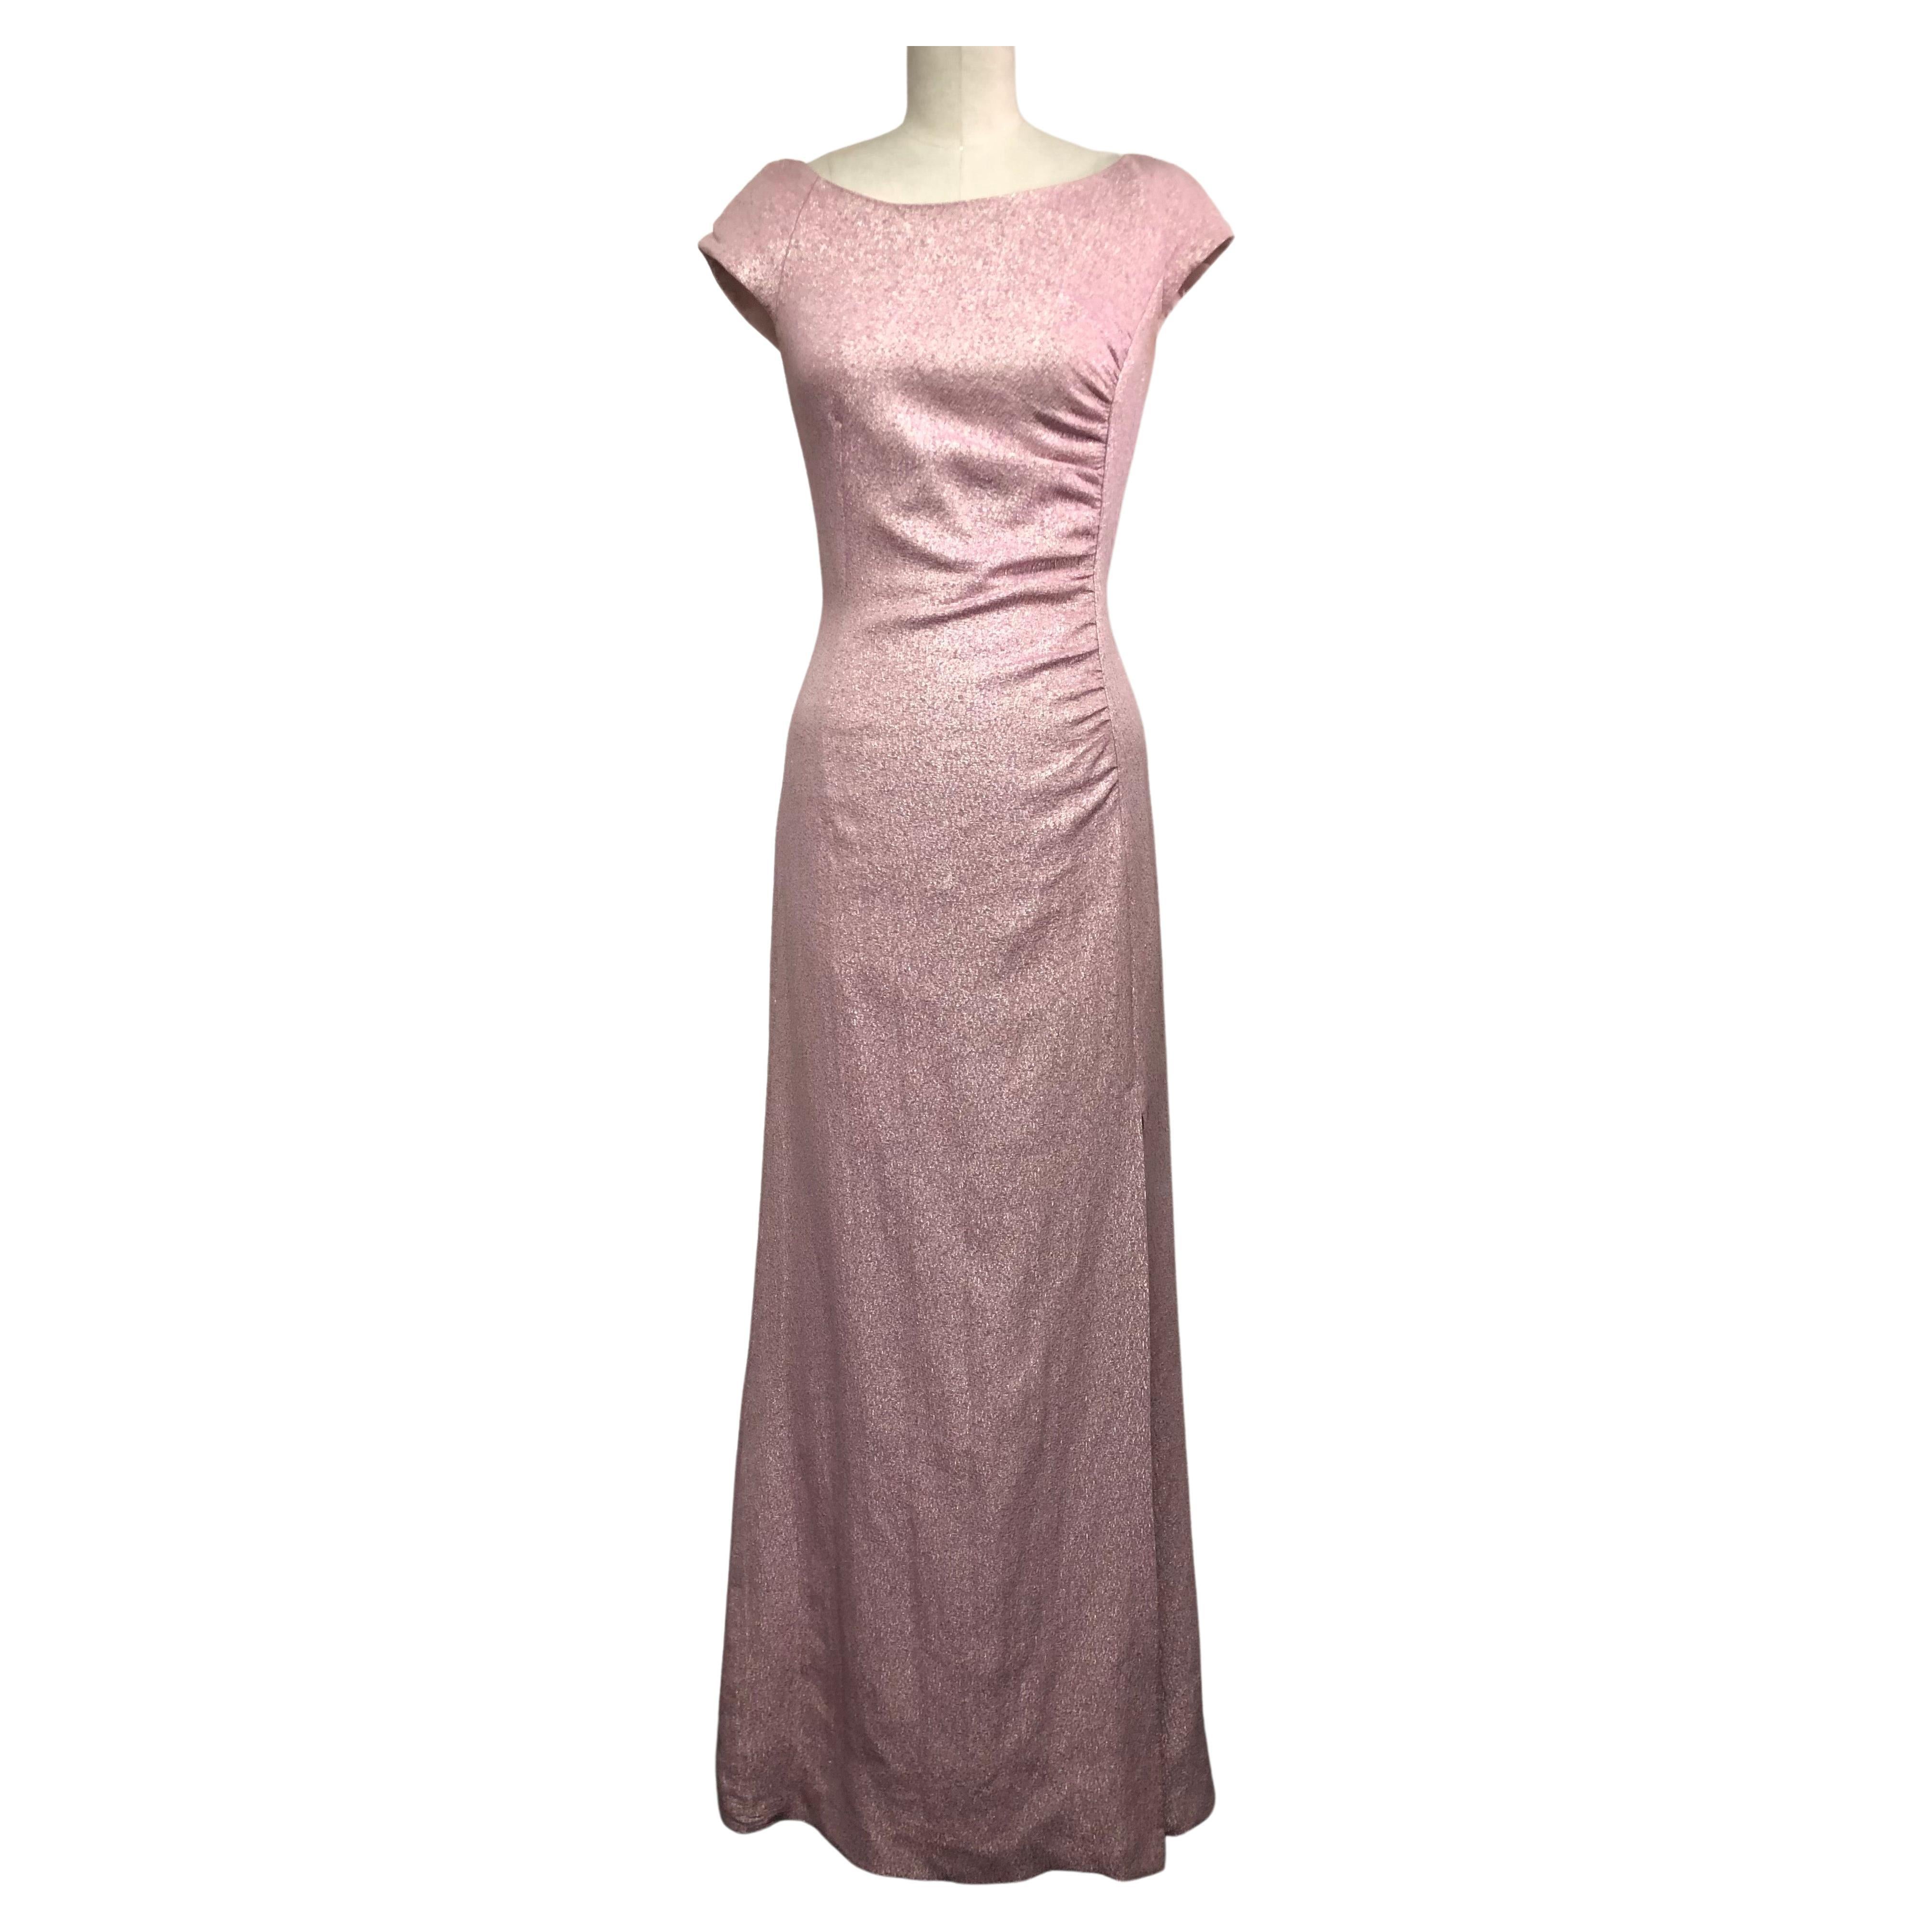 Rosey Pink funkelnd  Kleid aus französischem Crêpe mit seitlichen Rüschen und Seitenschlitz 